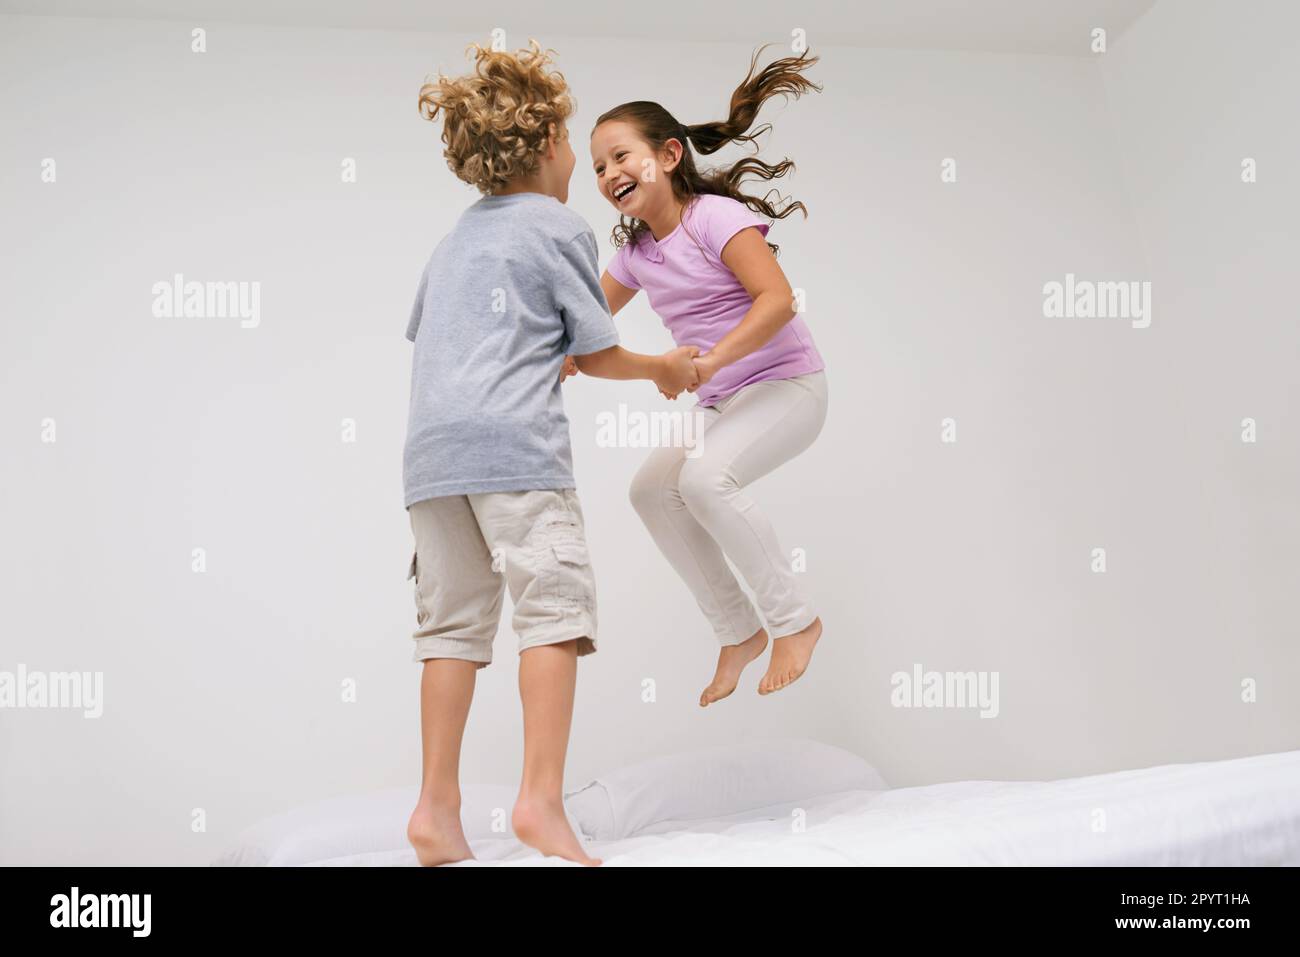 Fröhliches Kichern. Zwei kleine Kinder, die zusammen auf ein Bett springen. Stockfoto